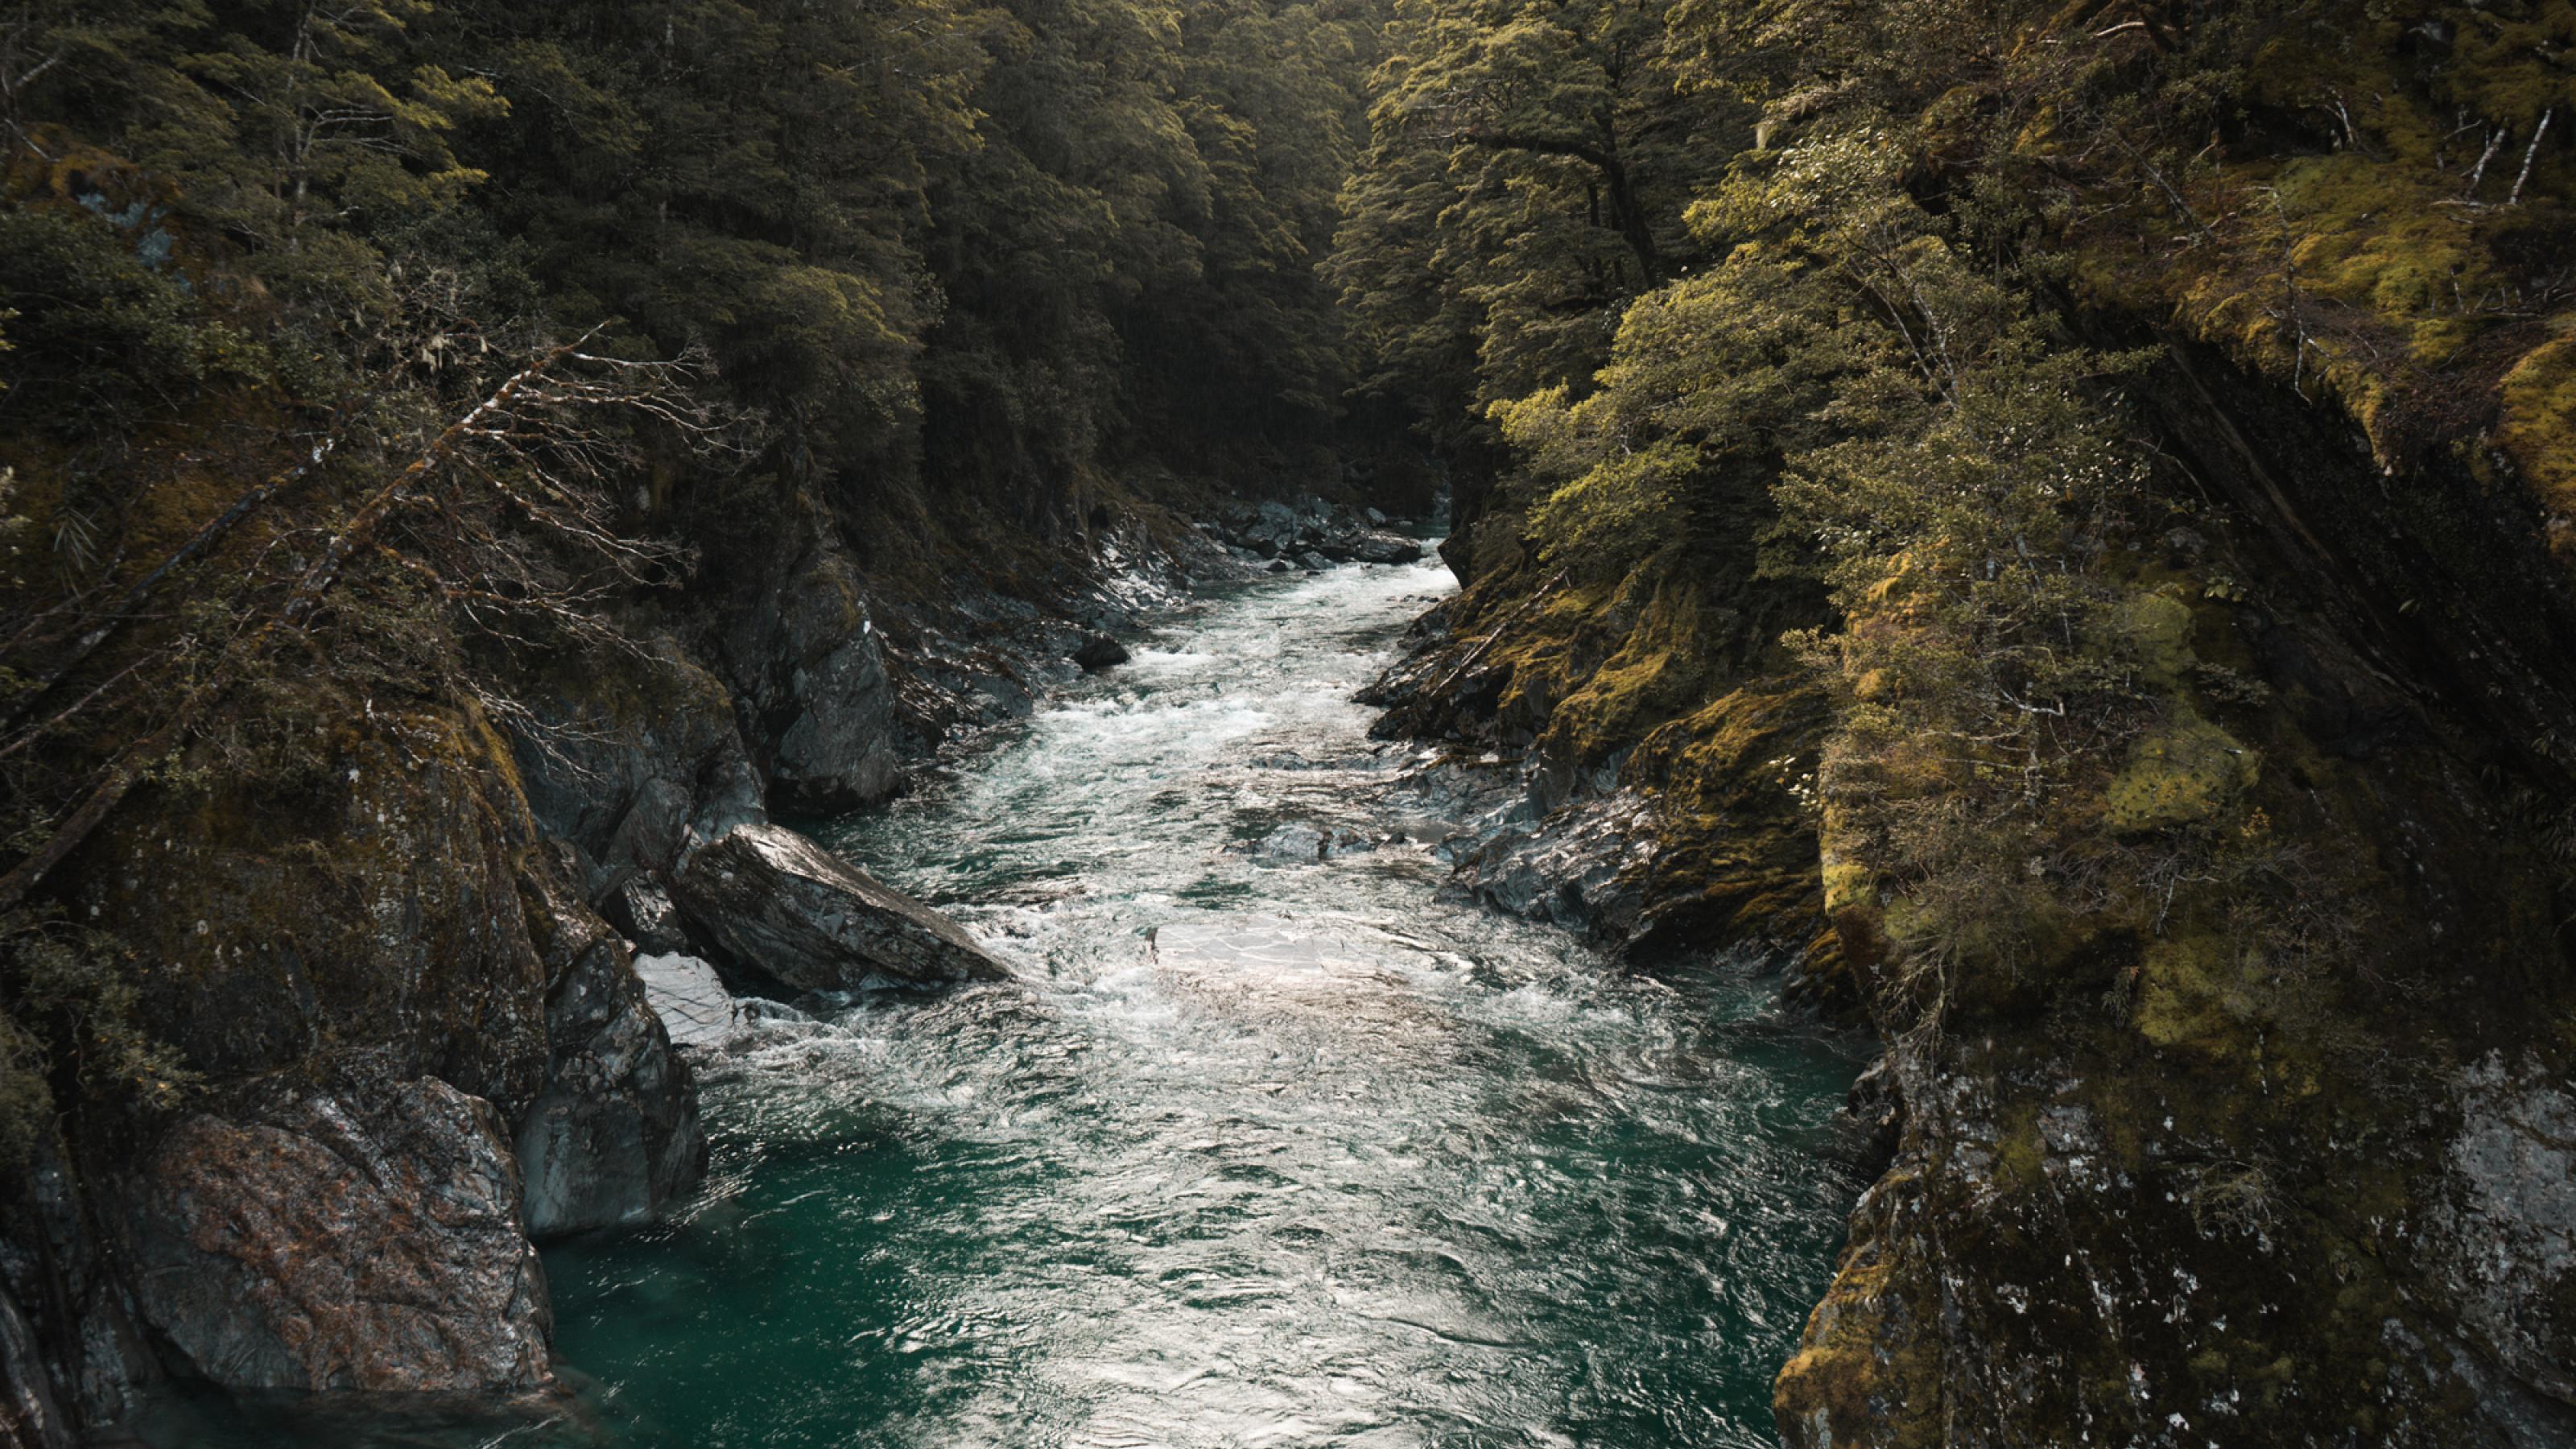 Ein strömender Fluss mit felsigem Ufer in der Schlucht eines Waldes.